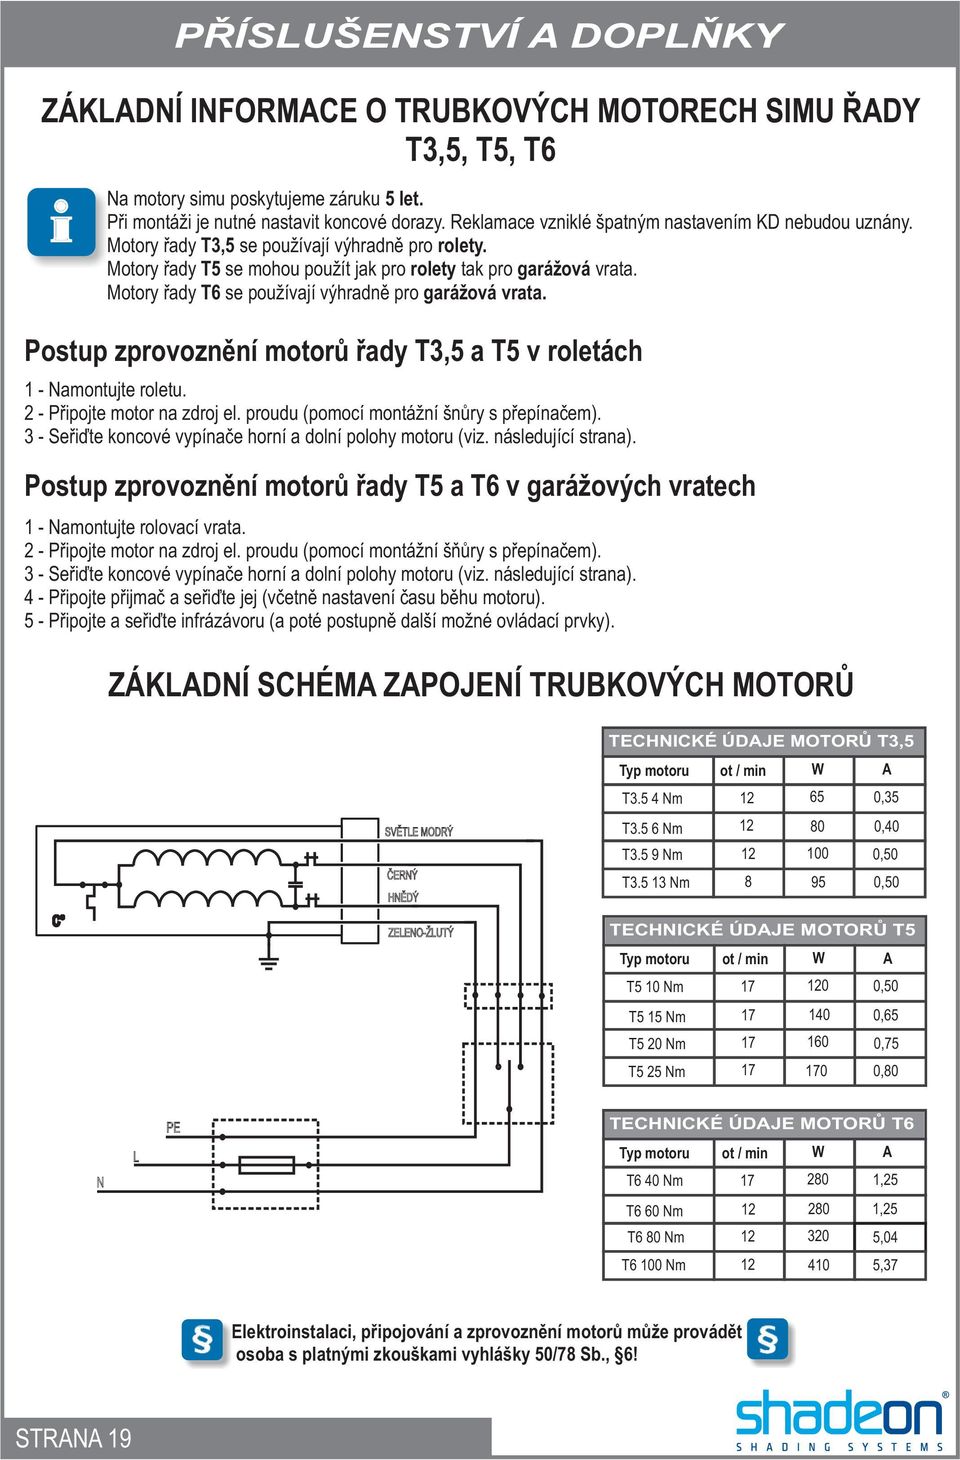 Motory øady T6 se používají výhradnì pro garážová vrata. Postup zprovoznìní motorù øady T3,5 a T5 v roletách 1 - Namontujte roletu. - Pøipojte motor na zdroj el.